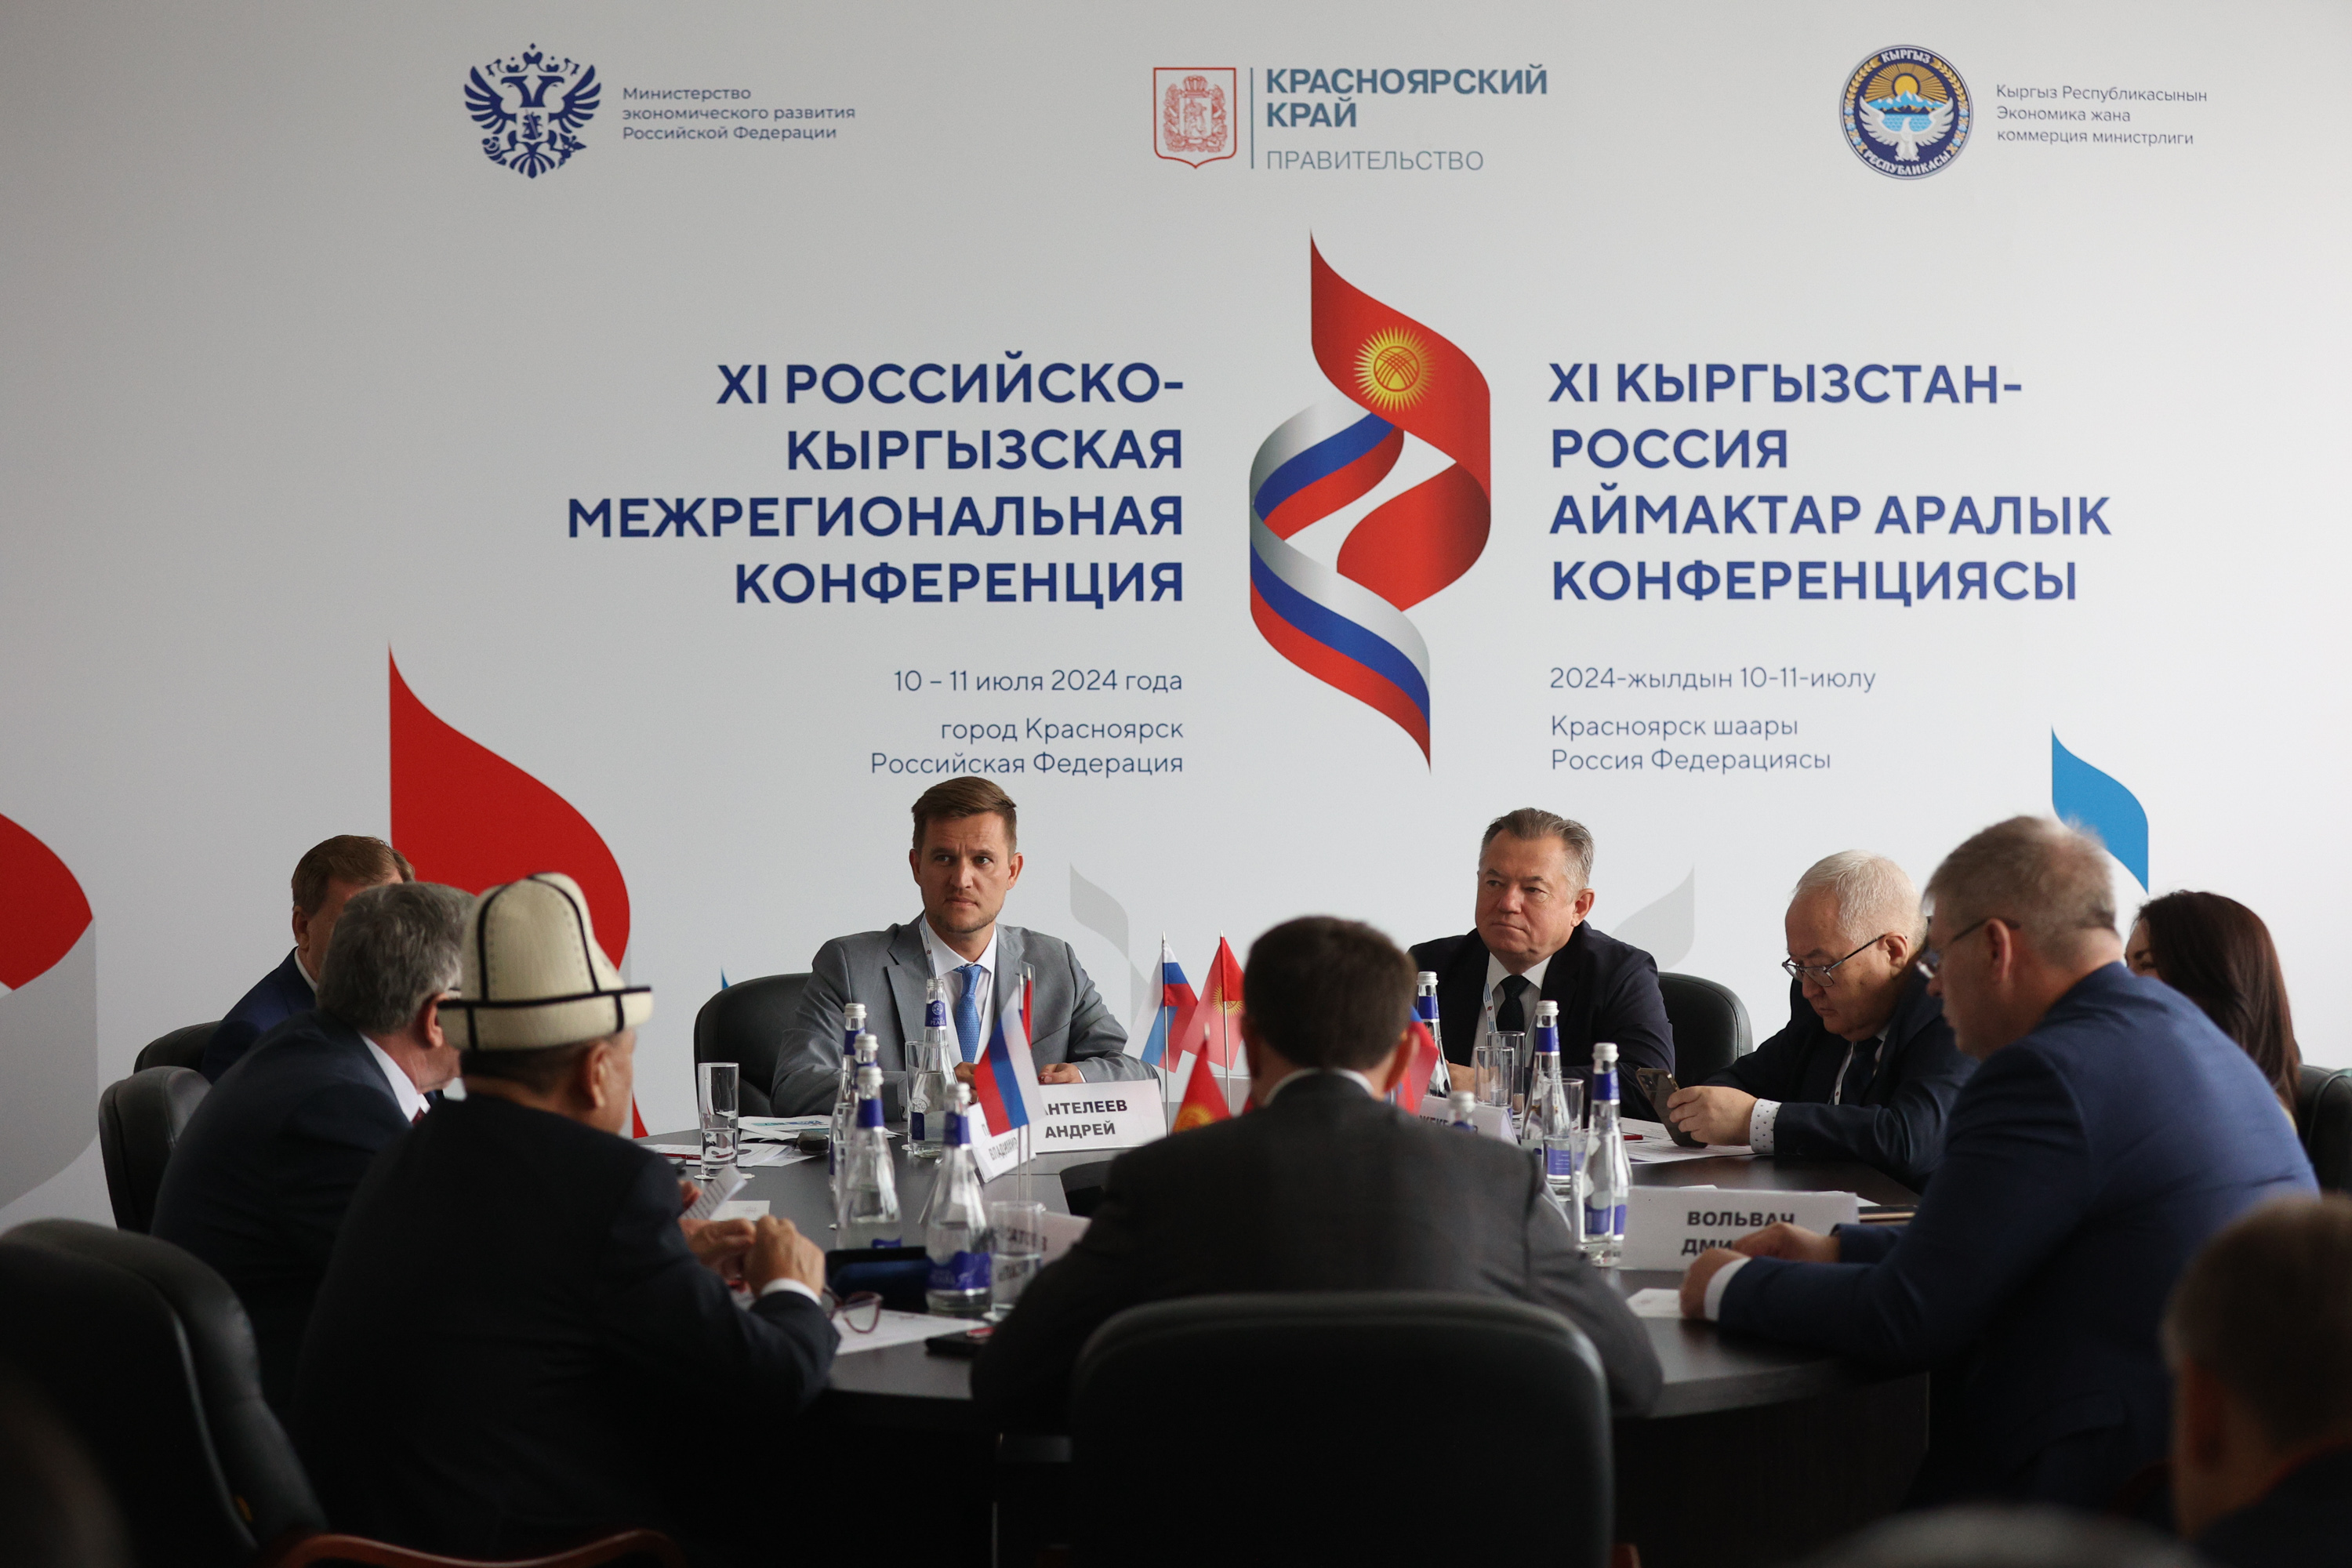 Поддержка сотрудничества между регионами стран ЕАЭС – один из приоритетов евразийской повестки развития до 2025 года